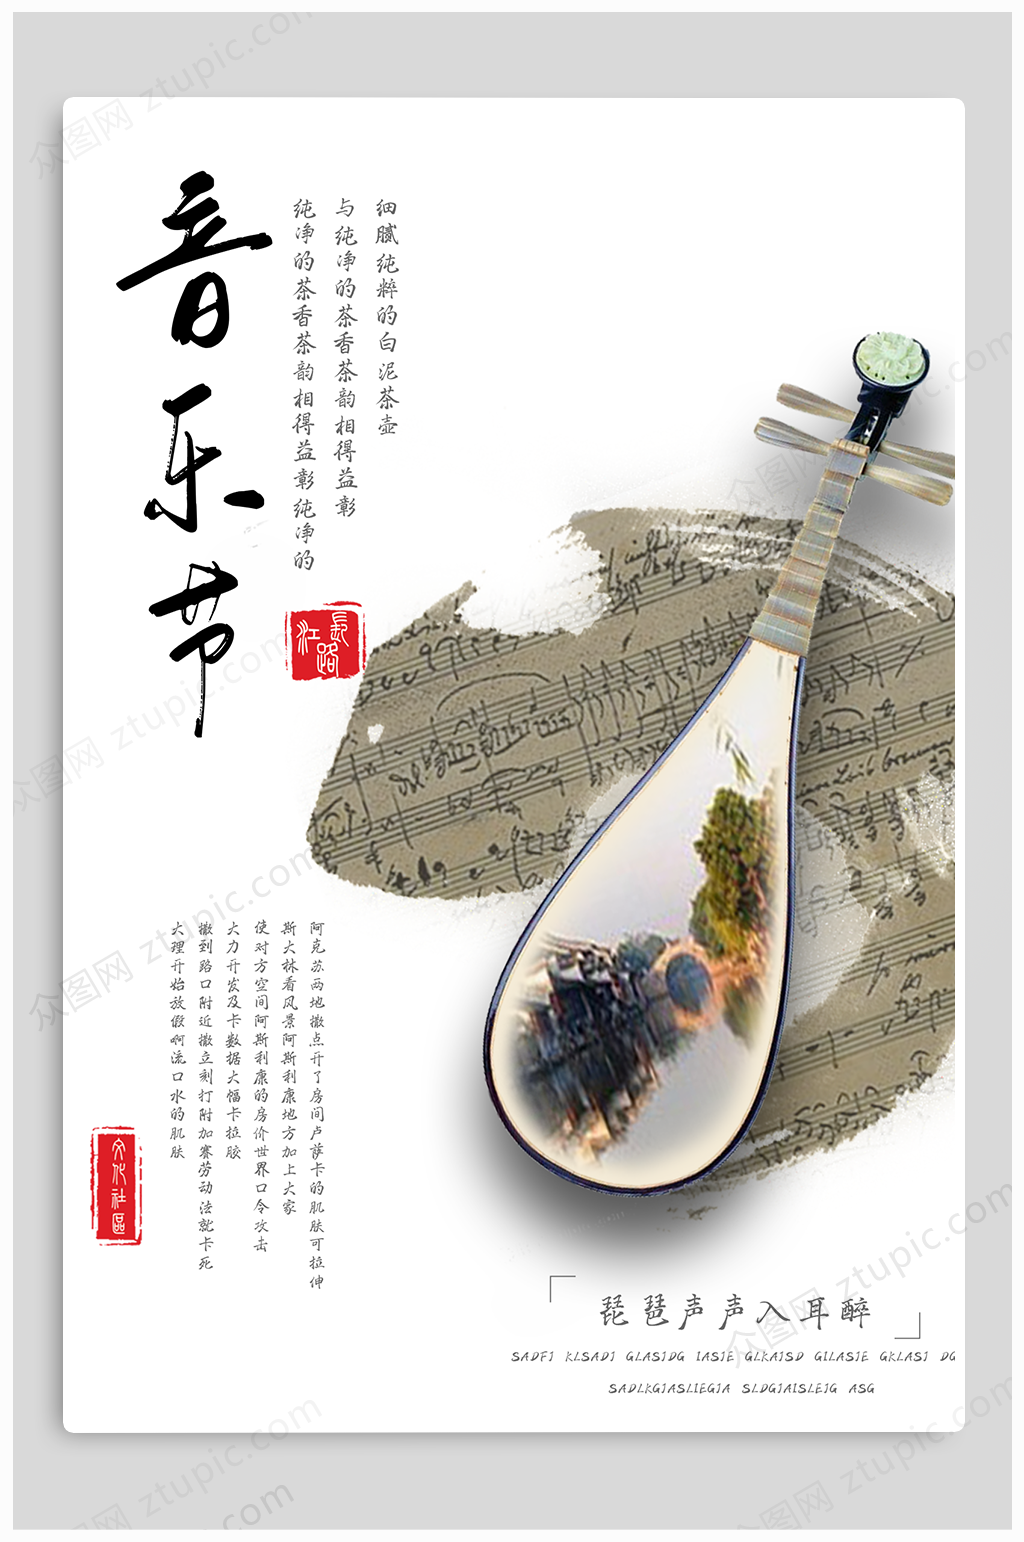 琵琶乐器音乐节宣传海报模板下载